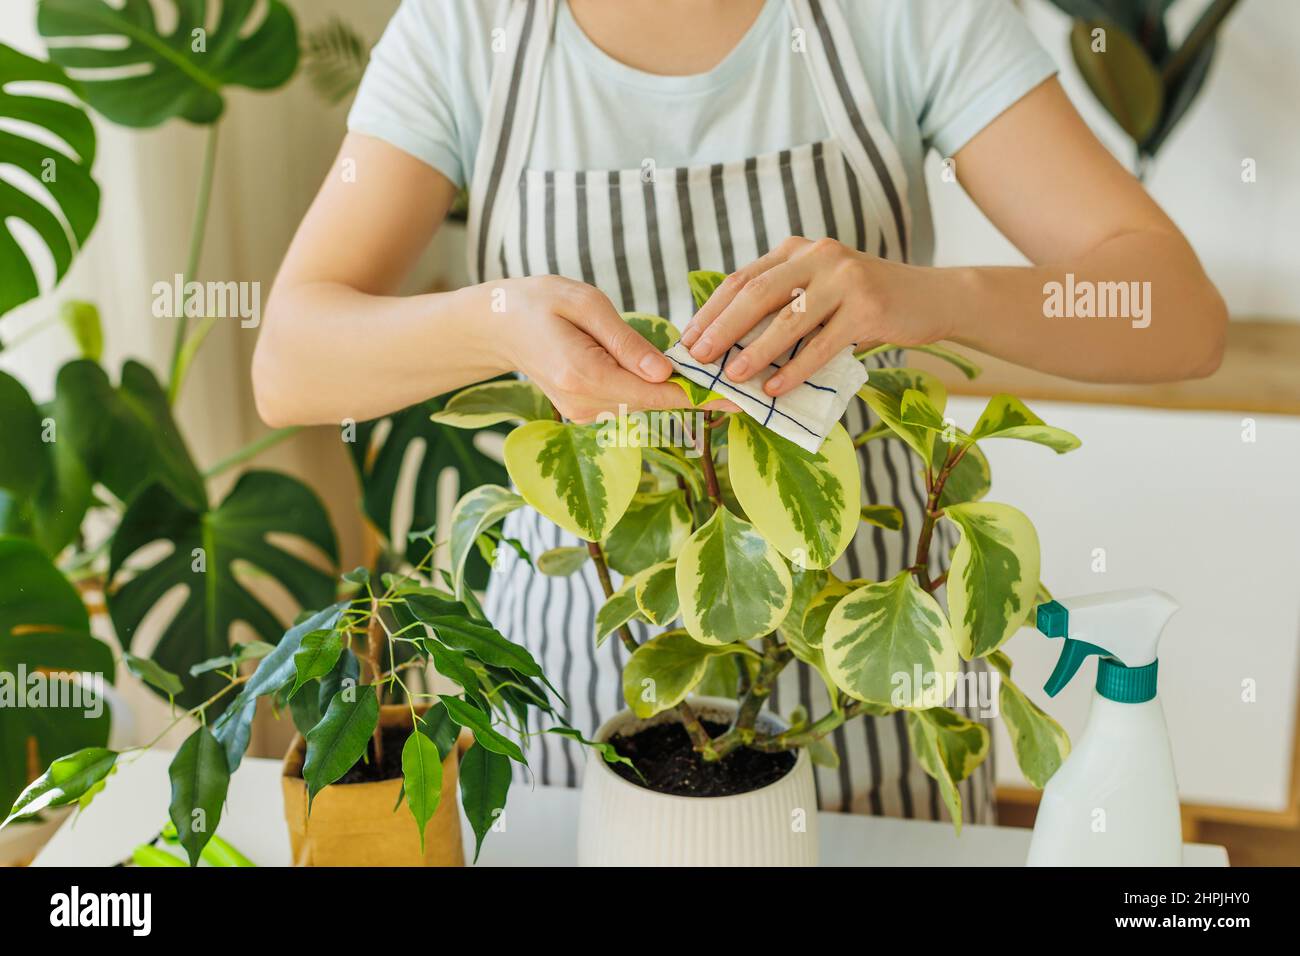 Frau im Vorfeld sprühen und putzen Zimmerpflanzen zu Hause. Frühling für die Pflege von Pflanzen. Konzept der Gartenarbeit, Hobby, häusliche Lebensweise. Stockfoto